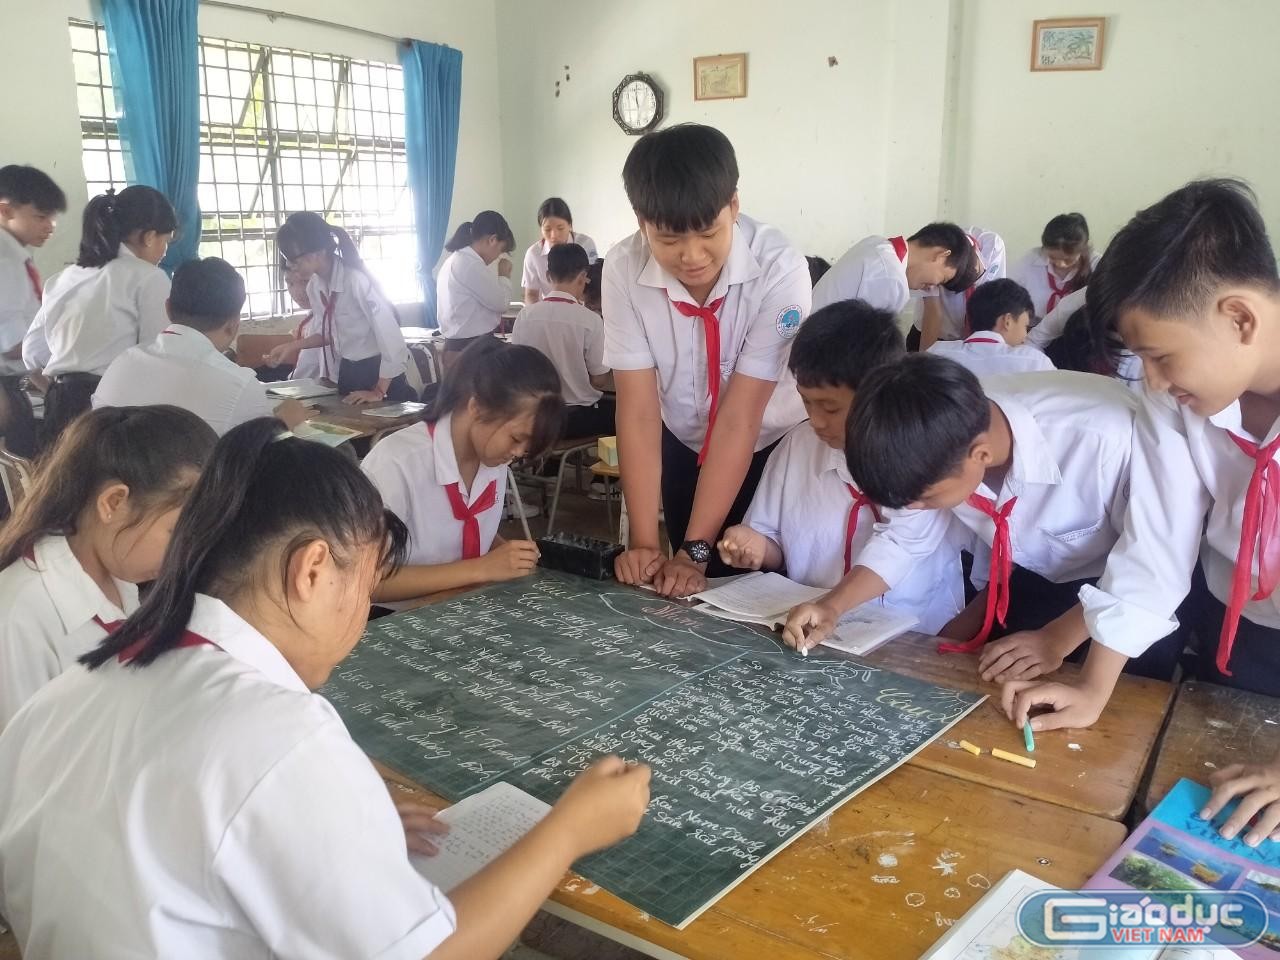 Bình Dương: Còn 4 Huyện, Thị Chưa Thể Lên Kế Hoạch Cho Học Sinh Đi Học Trực  Tiếp - Giáo Dục Việt Nam